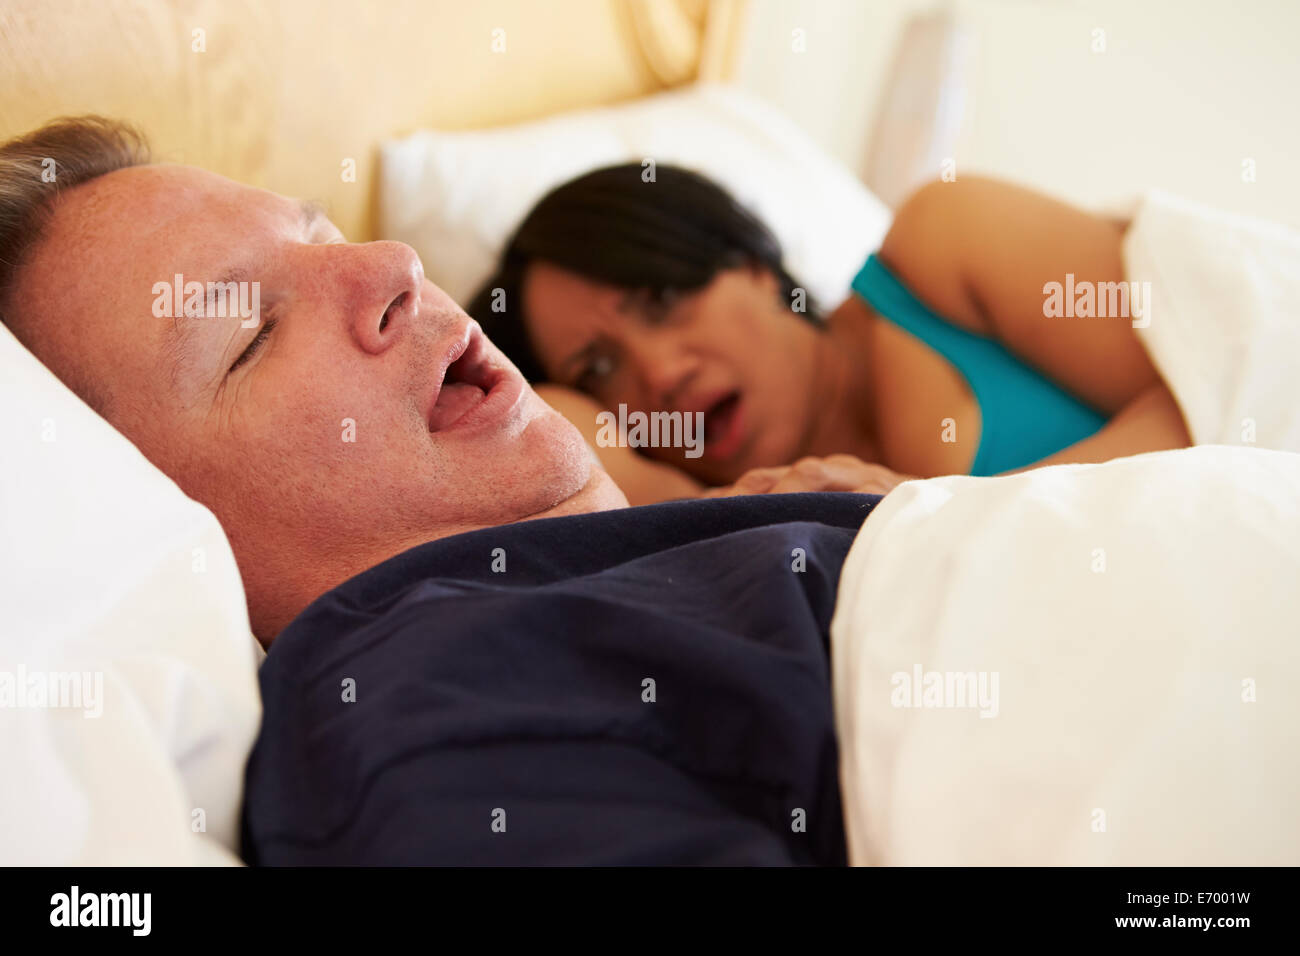 Giovane addormentato nel letto con uomo il russamento Foto Stock